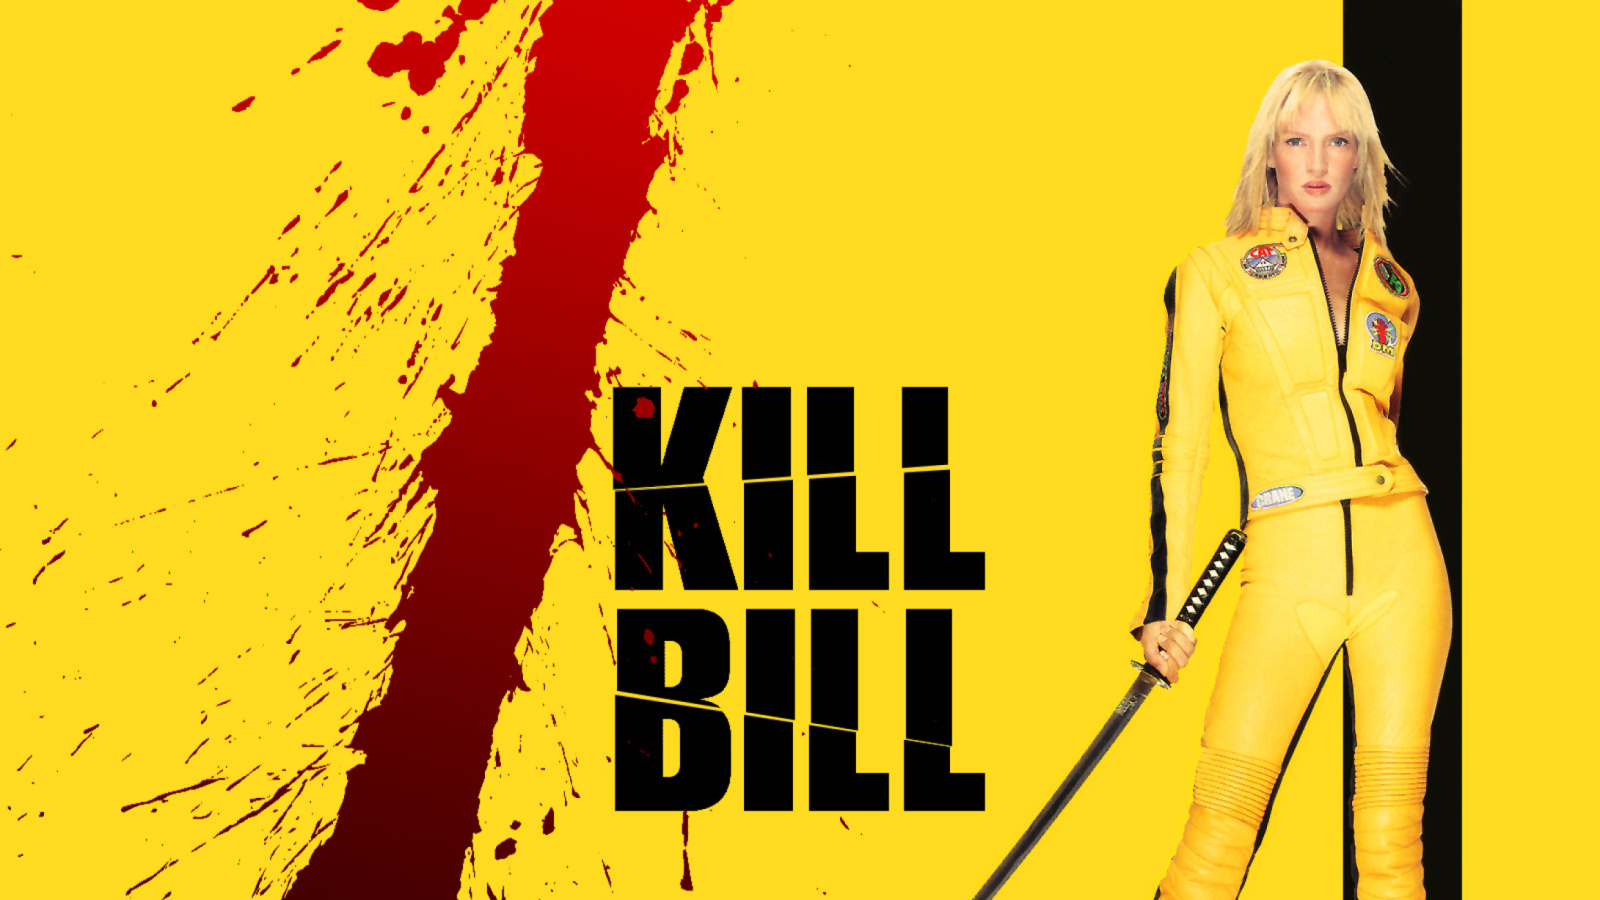 Kill Bill wallpaper 1600x900